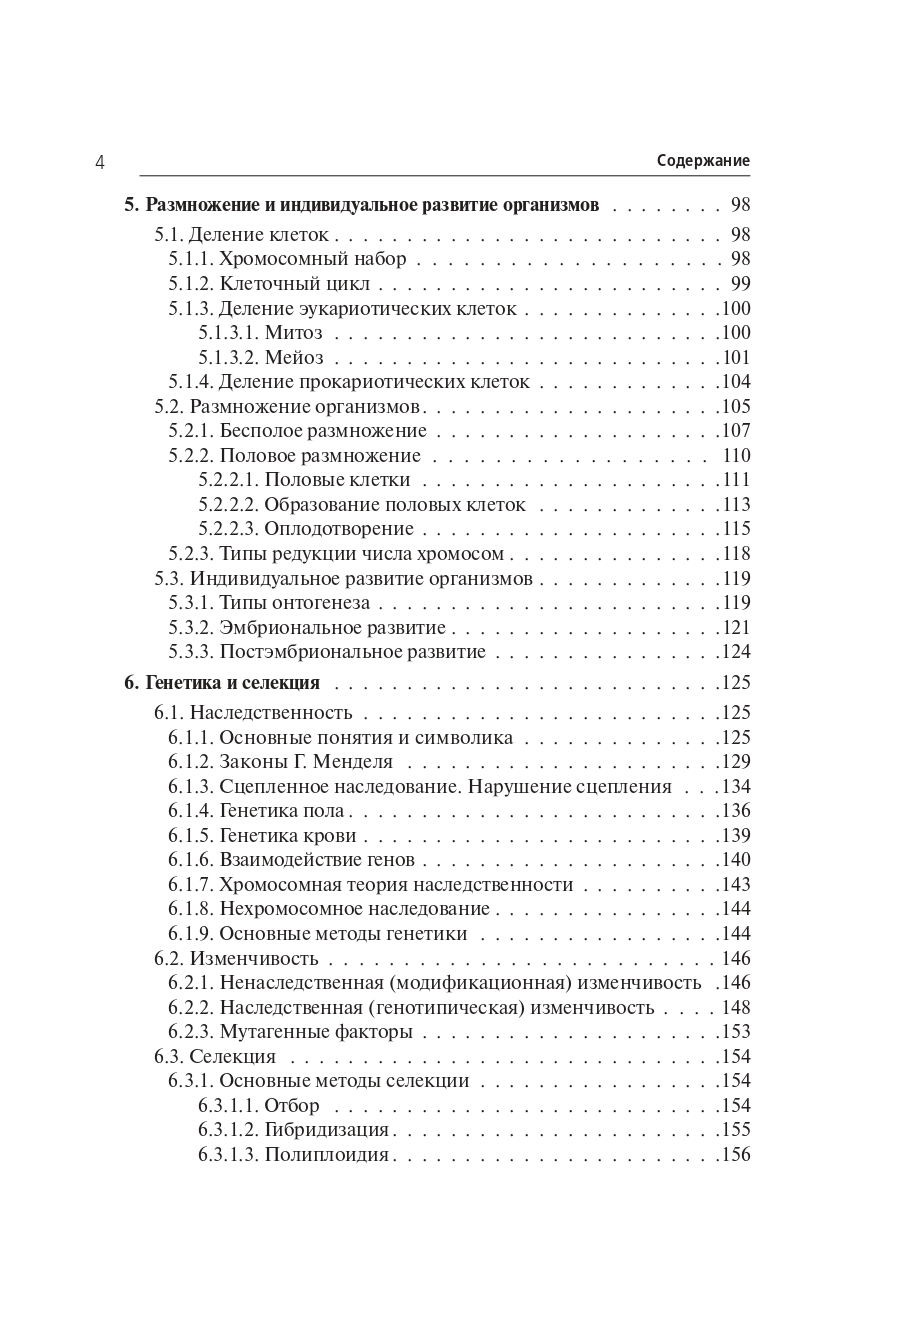 Биология. Большой справочник для подготовки к ЕГЭ и ОГЭ. Изд. 10-е, перераб. и доп.